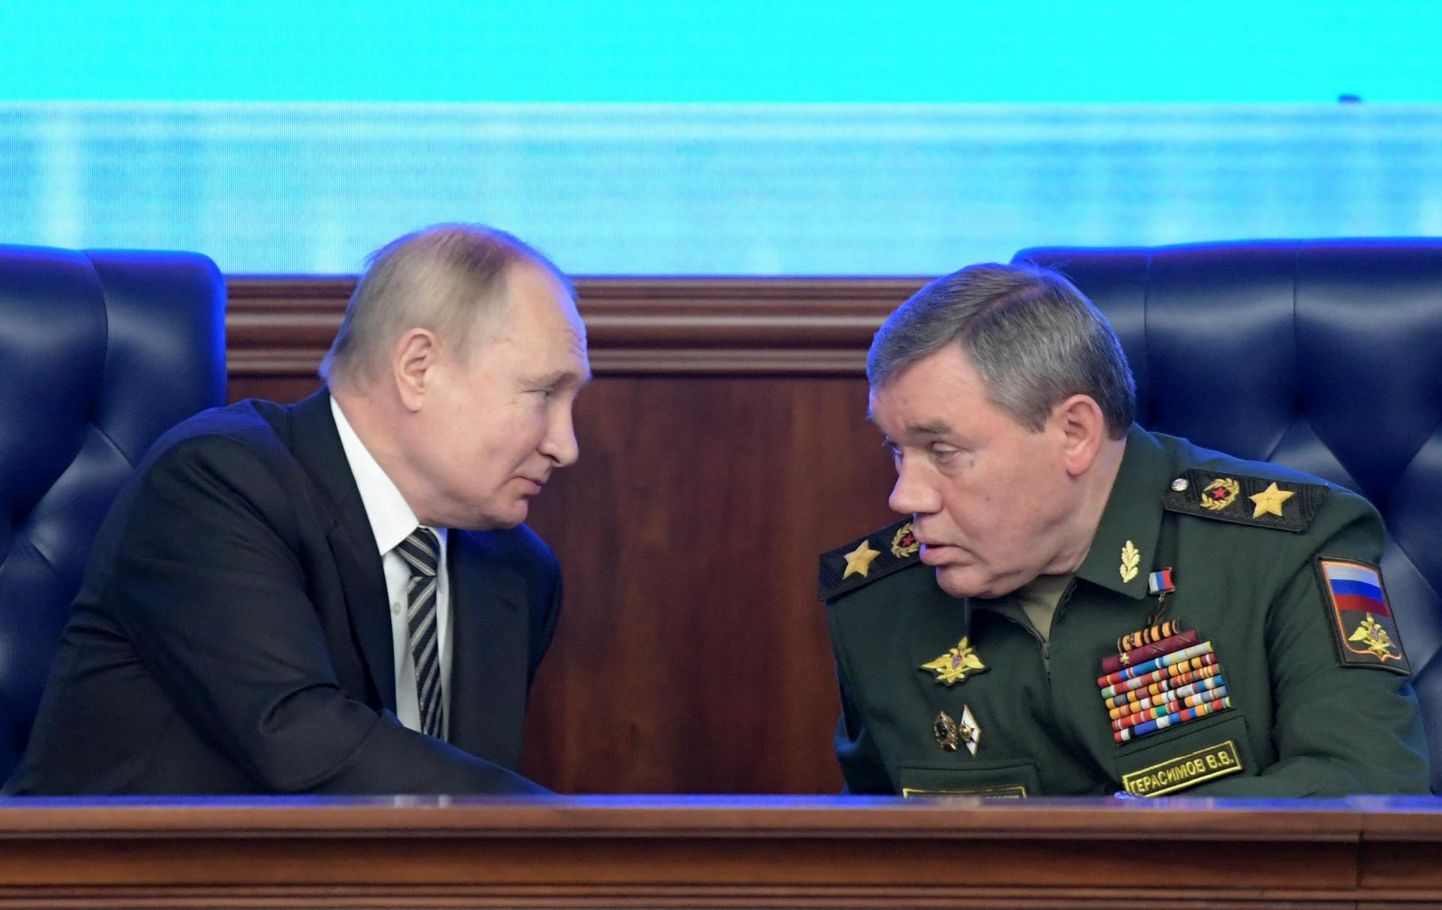 Venemaa president Vladimir Putin ja Vene armee kindralstaabi ülem armeekindral Valeri Gerassimov 2021. aasta 21. detsembril iga-aastasel kaitseministeeriumi juhtkonna koosolekul Moskvas. 